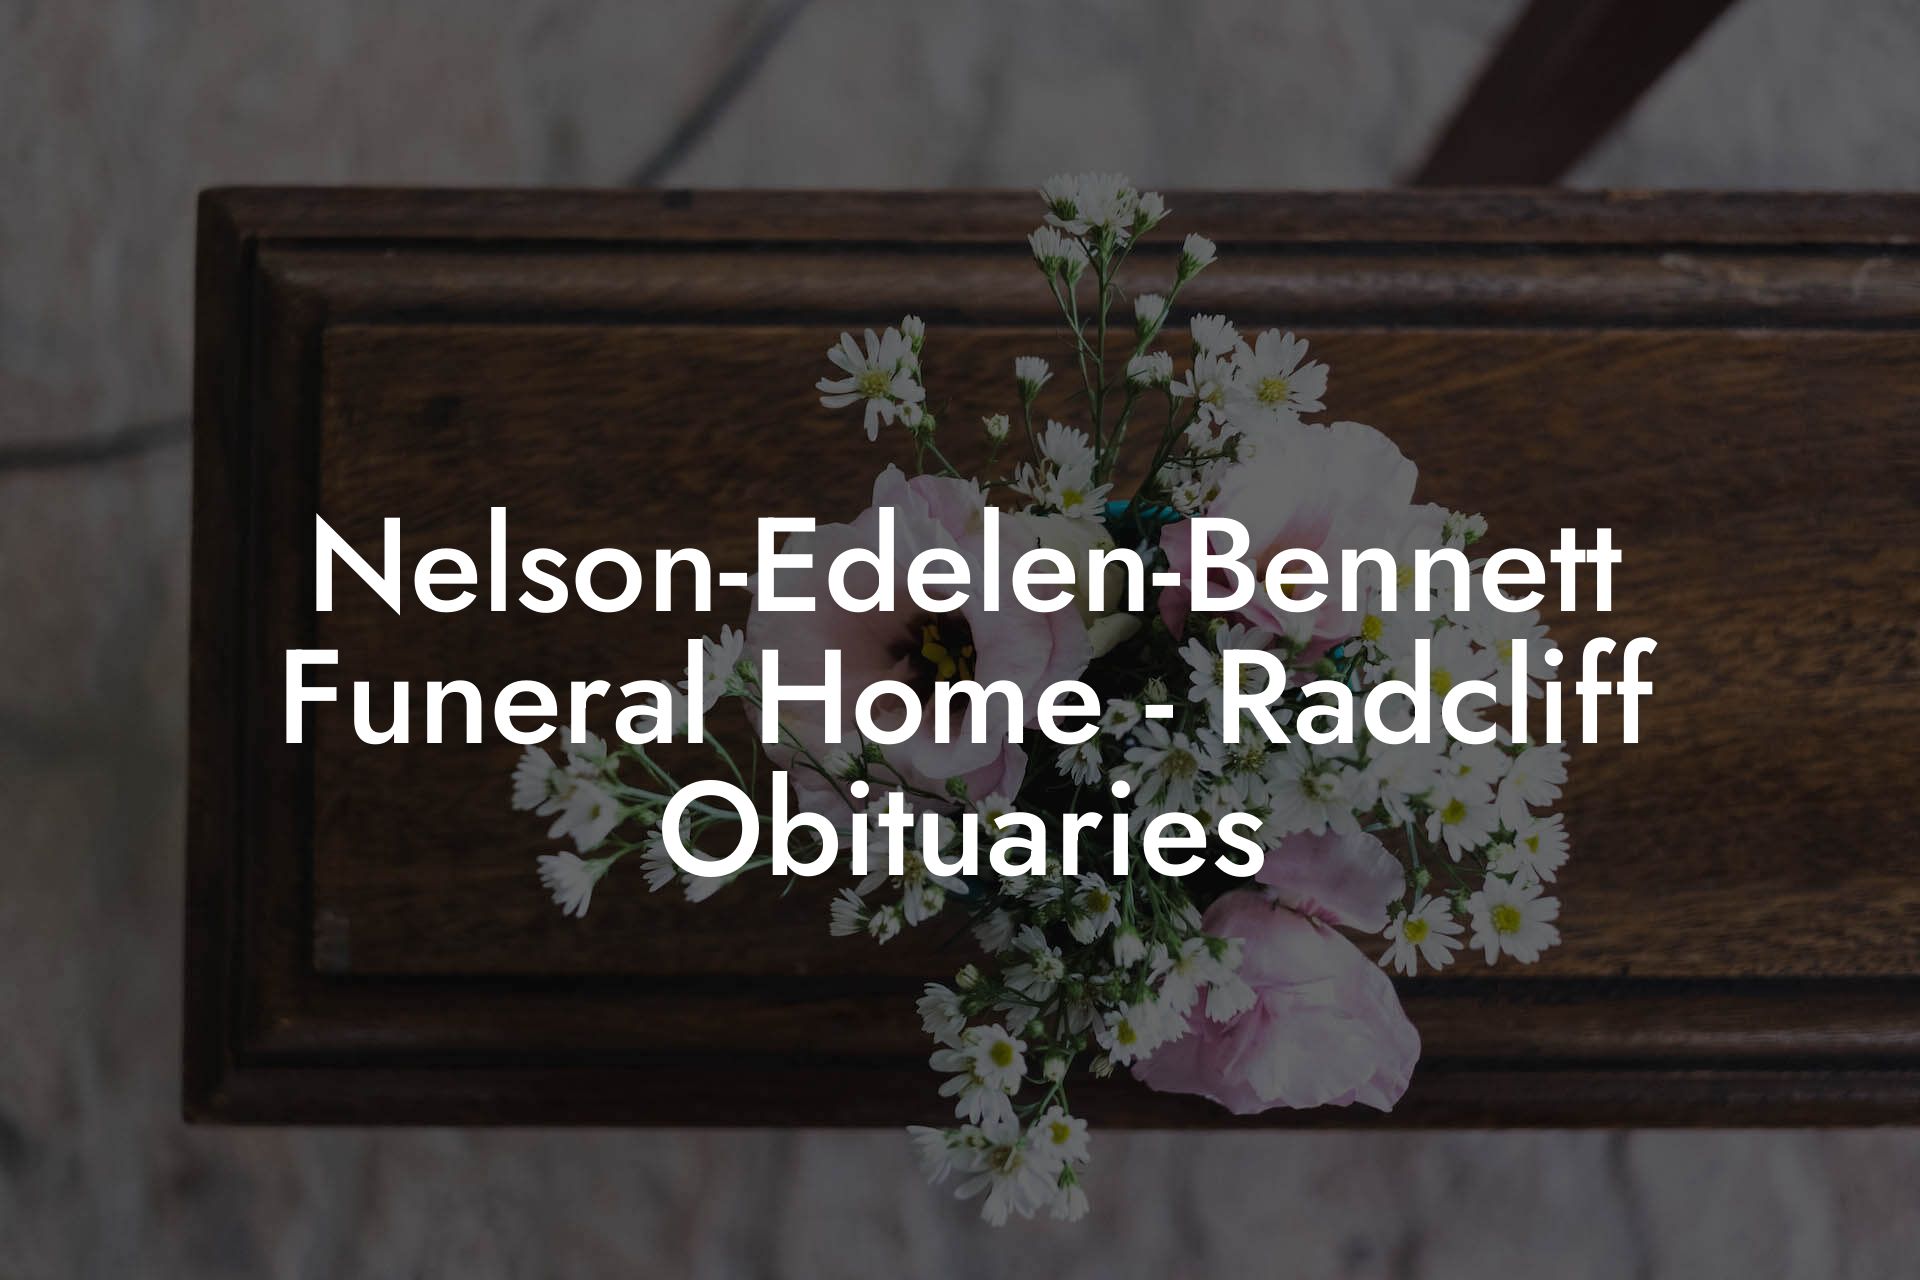 Nelson-Edelen-Bennett Funeral Home - Radcliff Obituaries